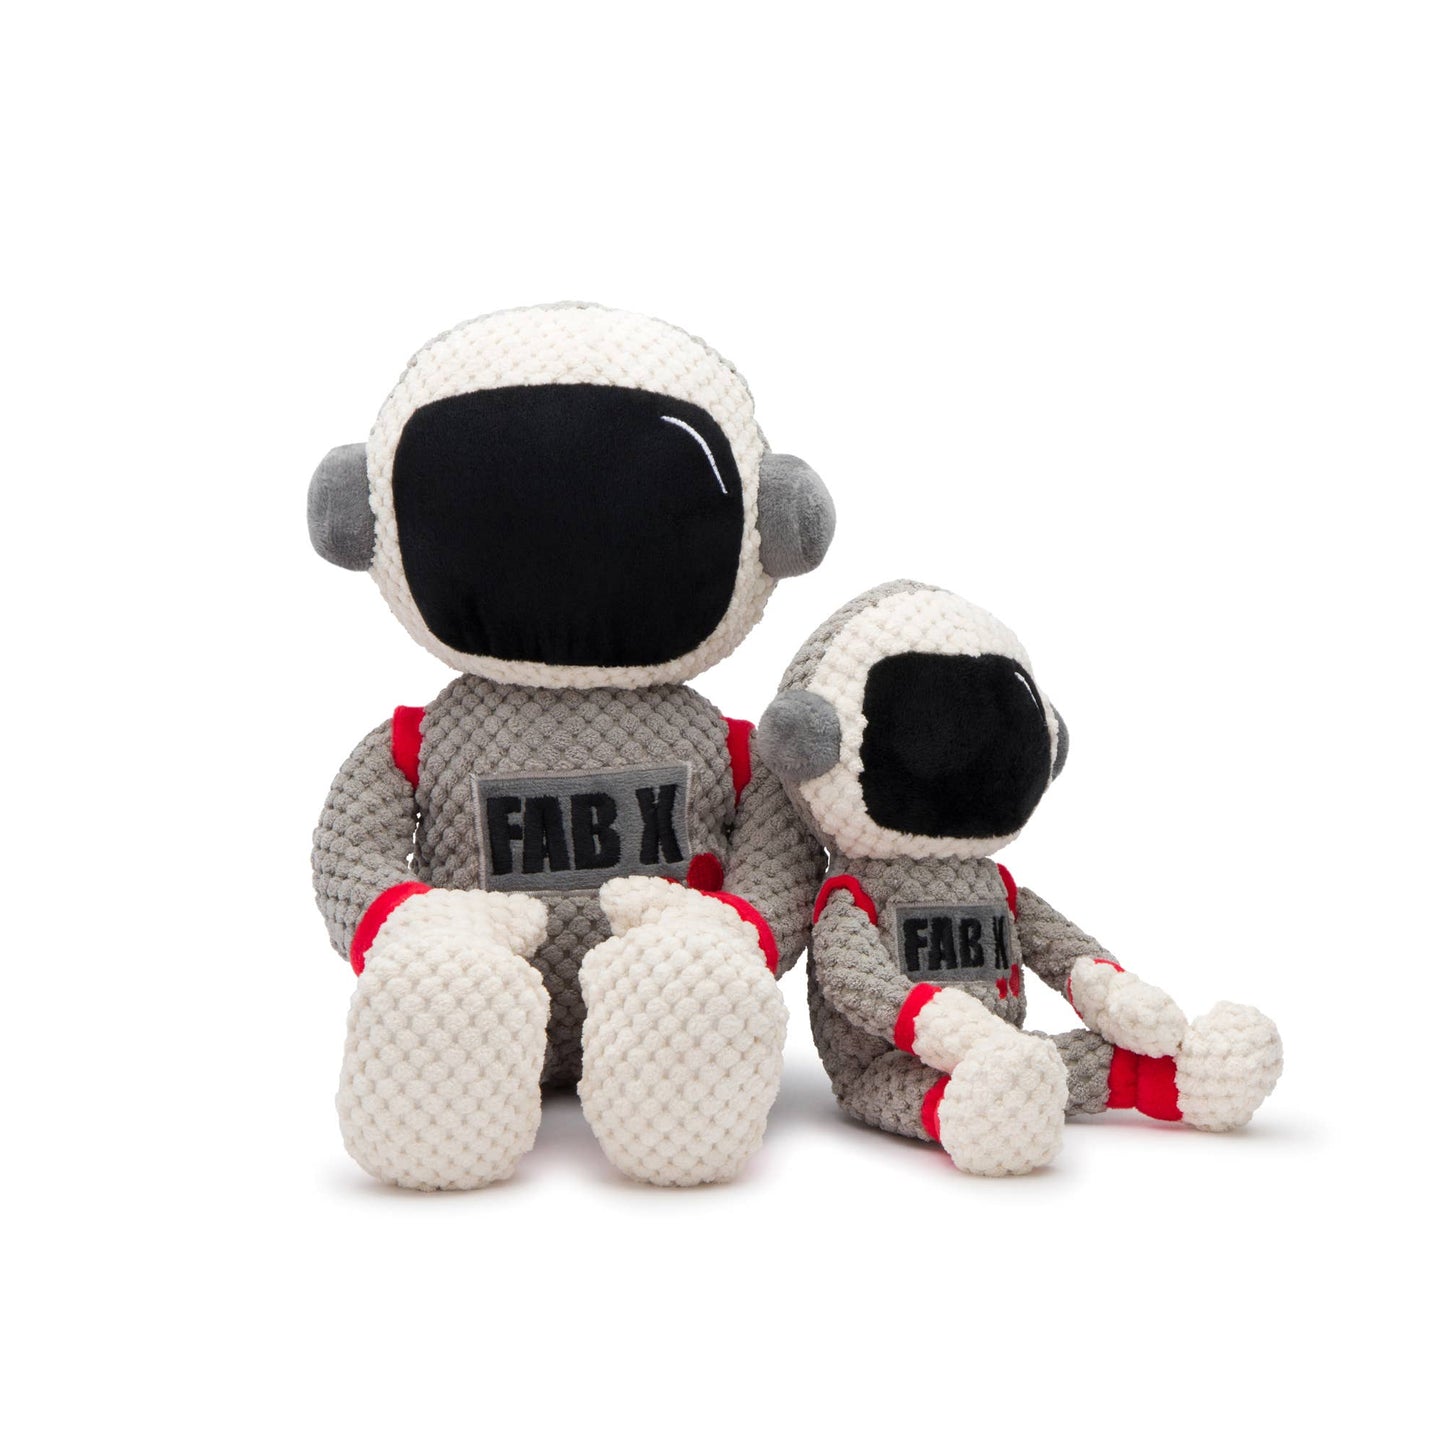 Astronaut Floppy Plush Dog Toy: Small